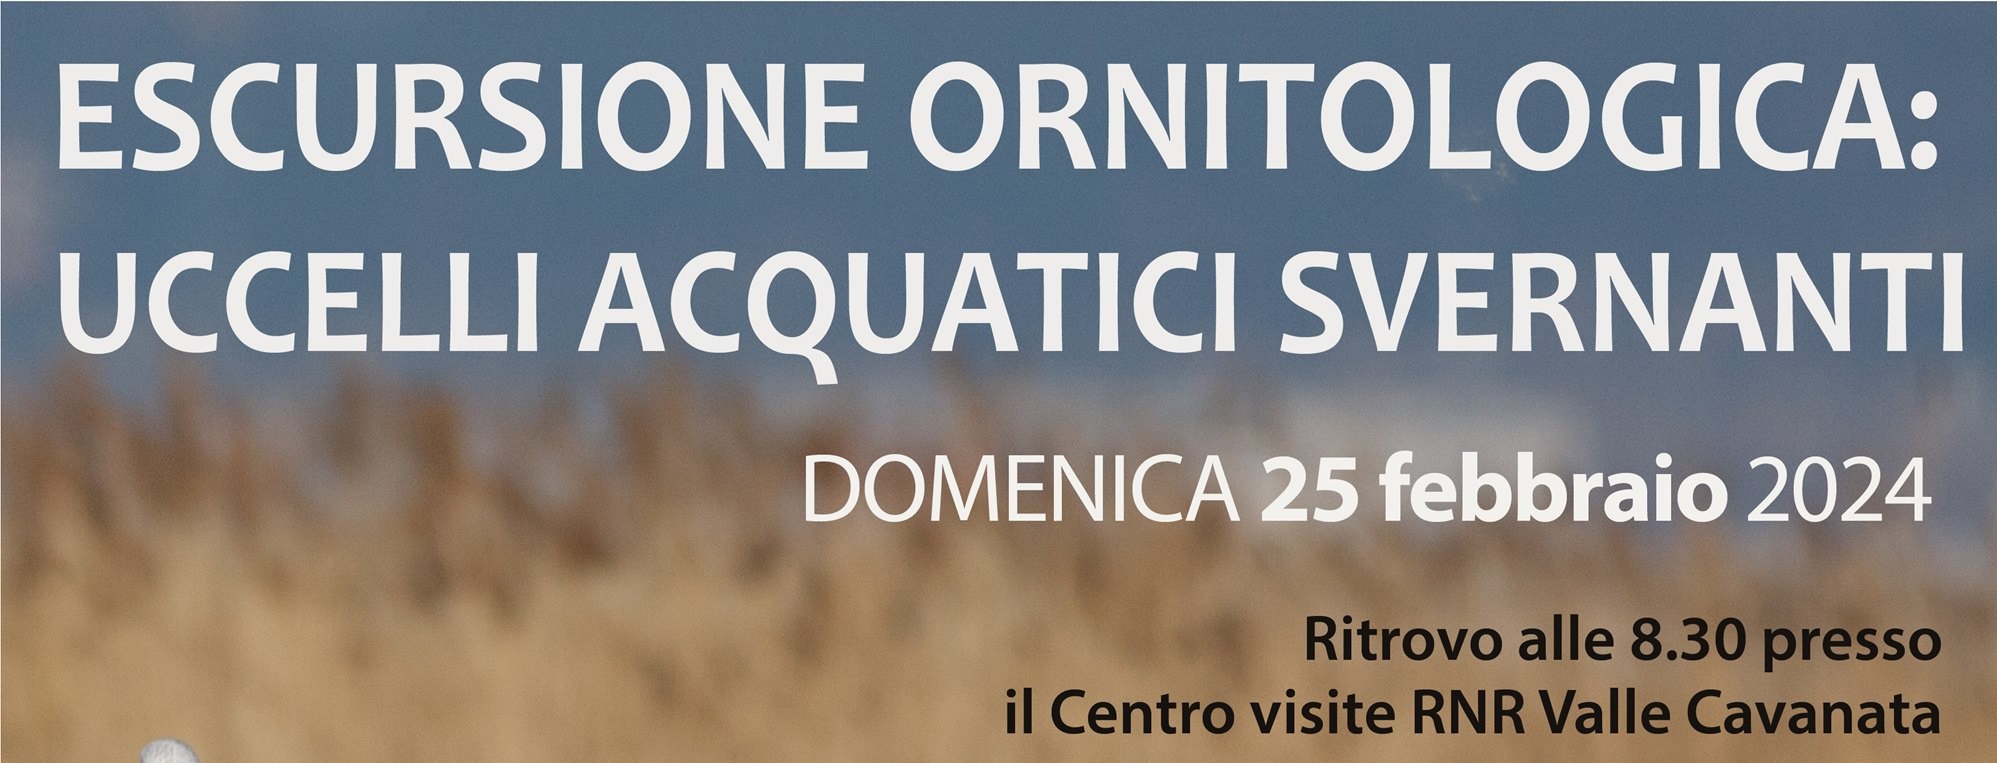 Escursione_Ornitologica_feb2024 - Copia